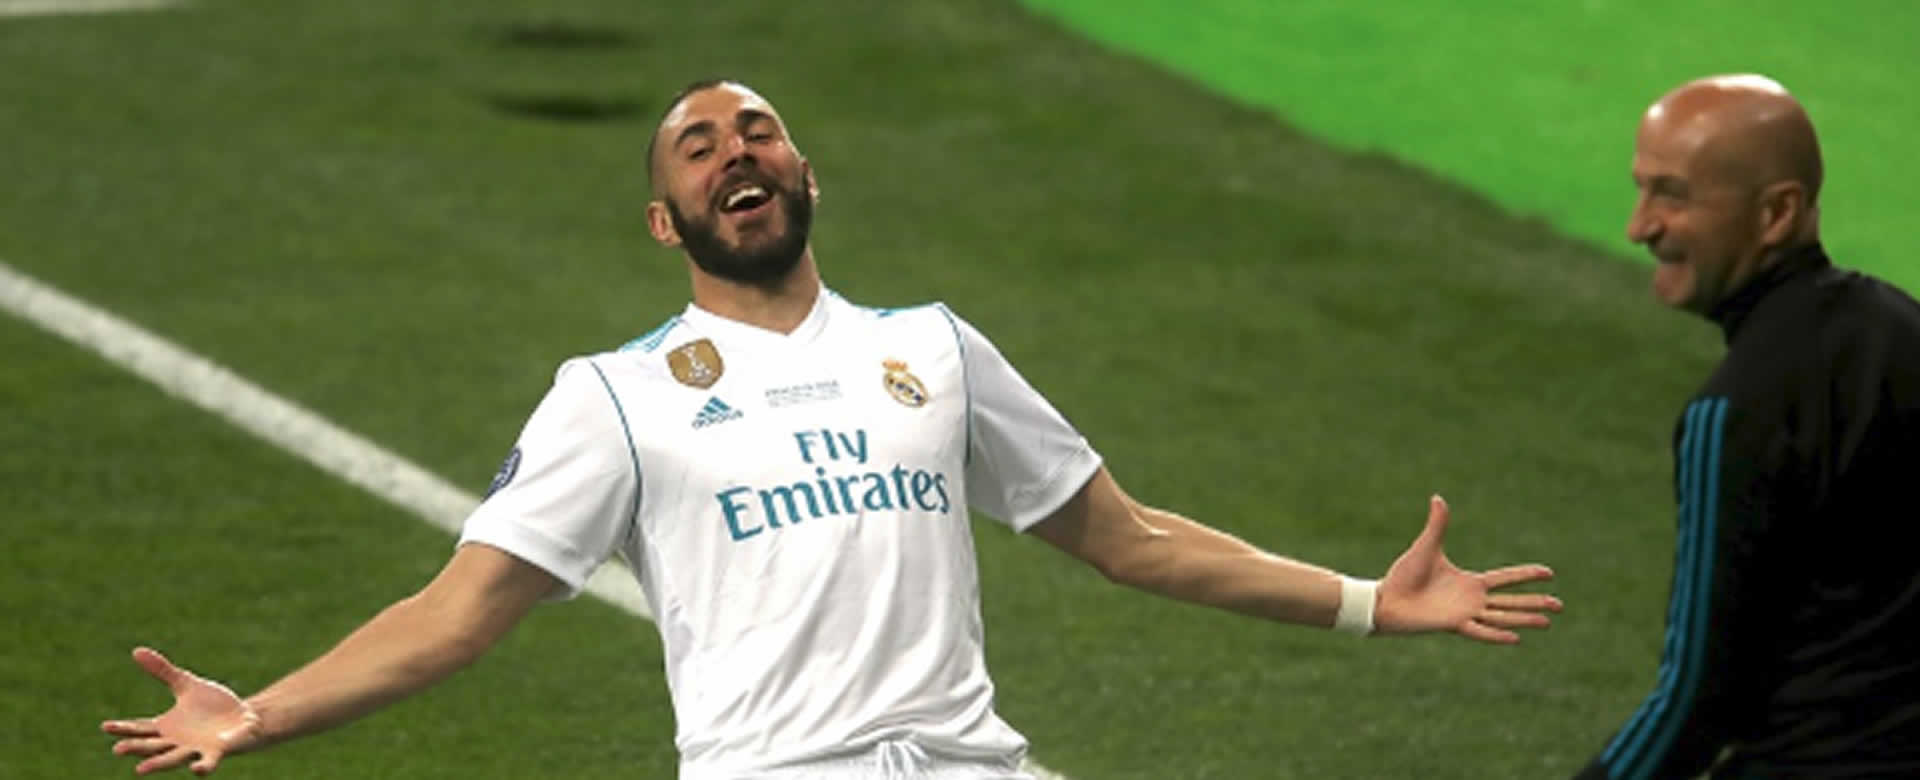 Real Madrid gana su decimotercera orejona de la Liga de Campeones en Kiev